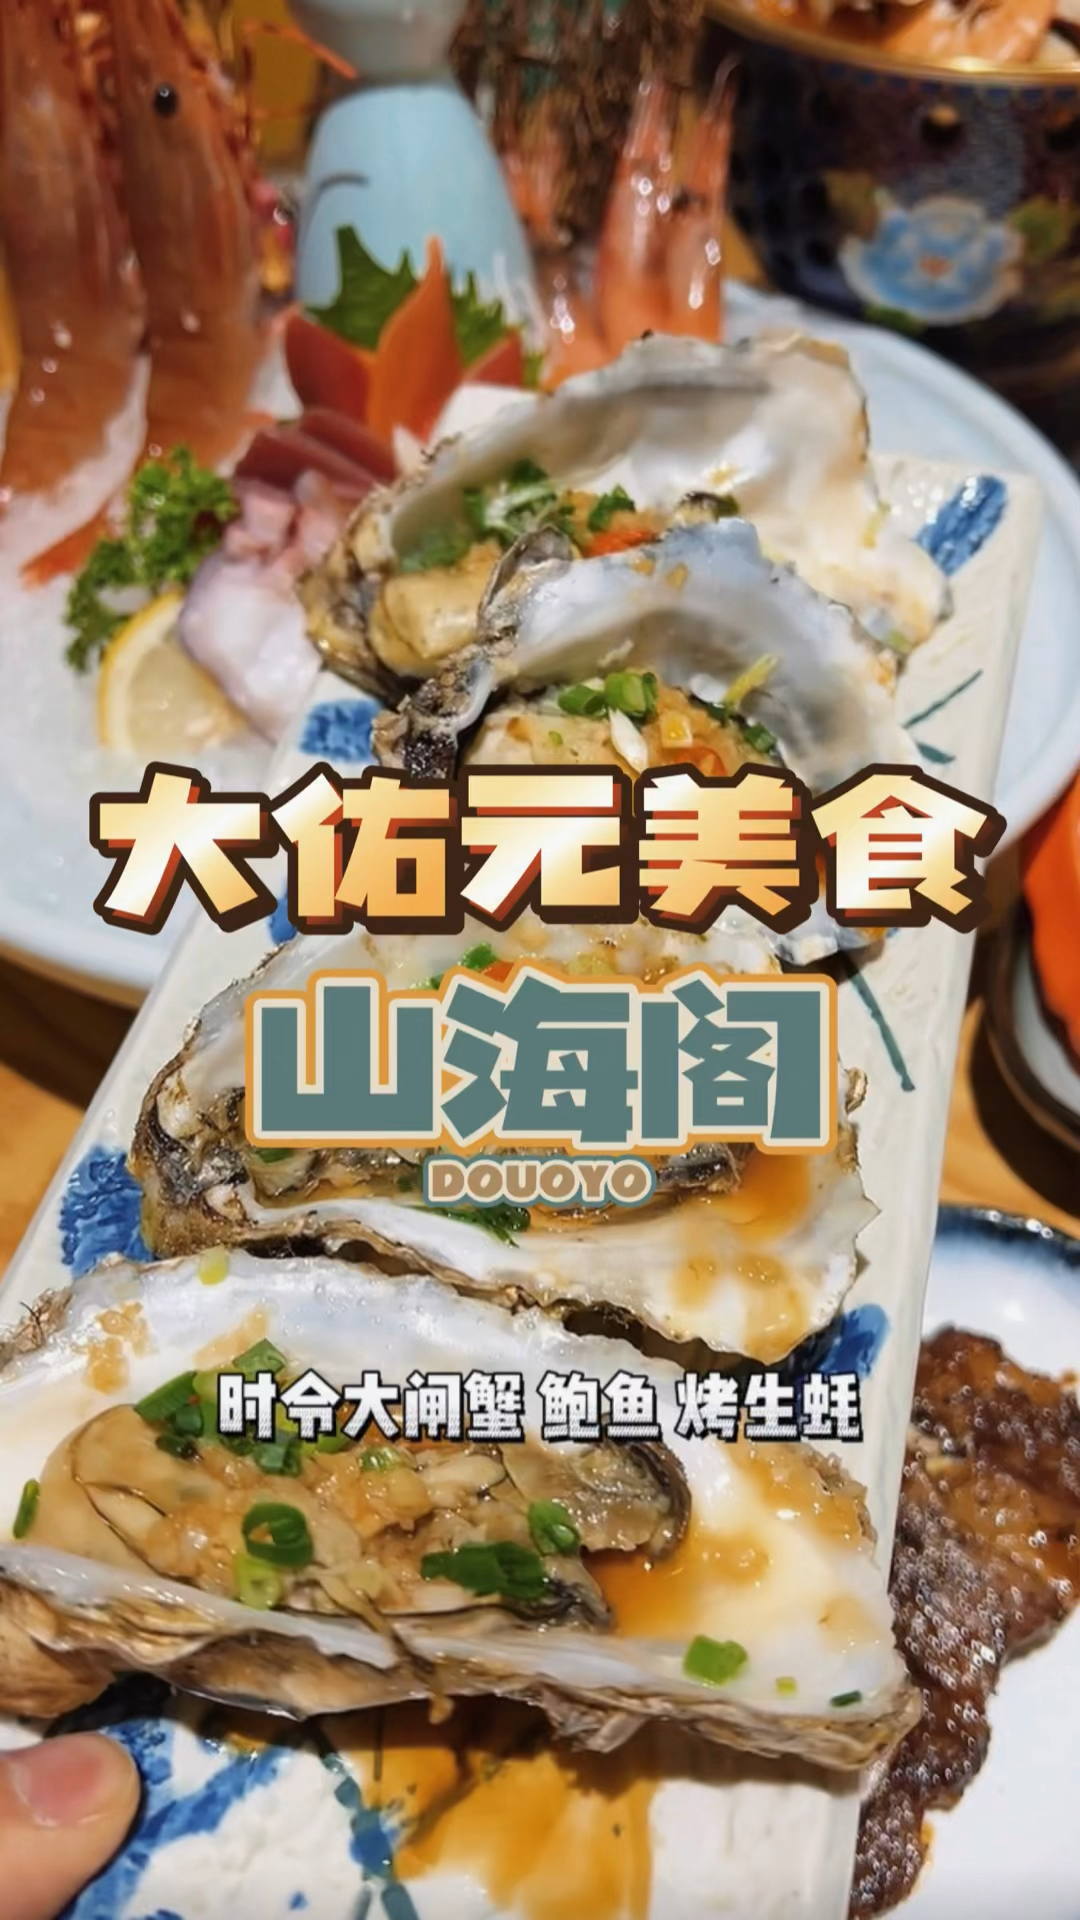 在杭州如何能吃到精致的海鲜日料自助,山海阁就能吃到